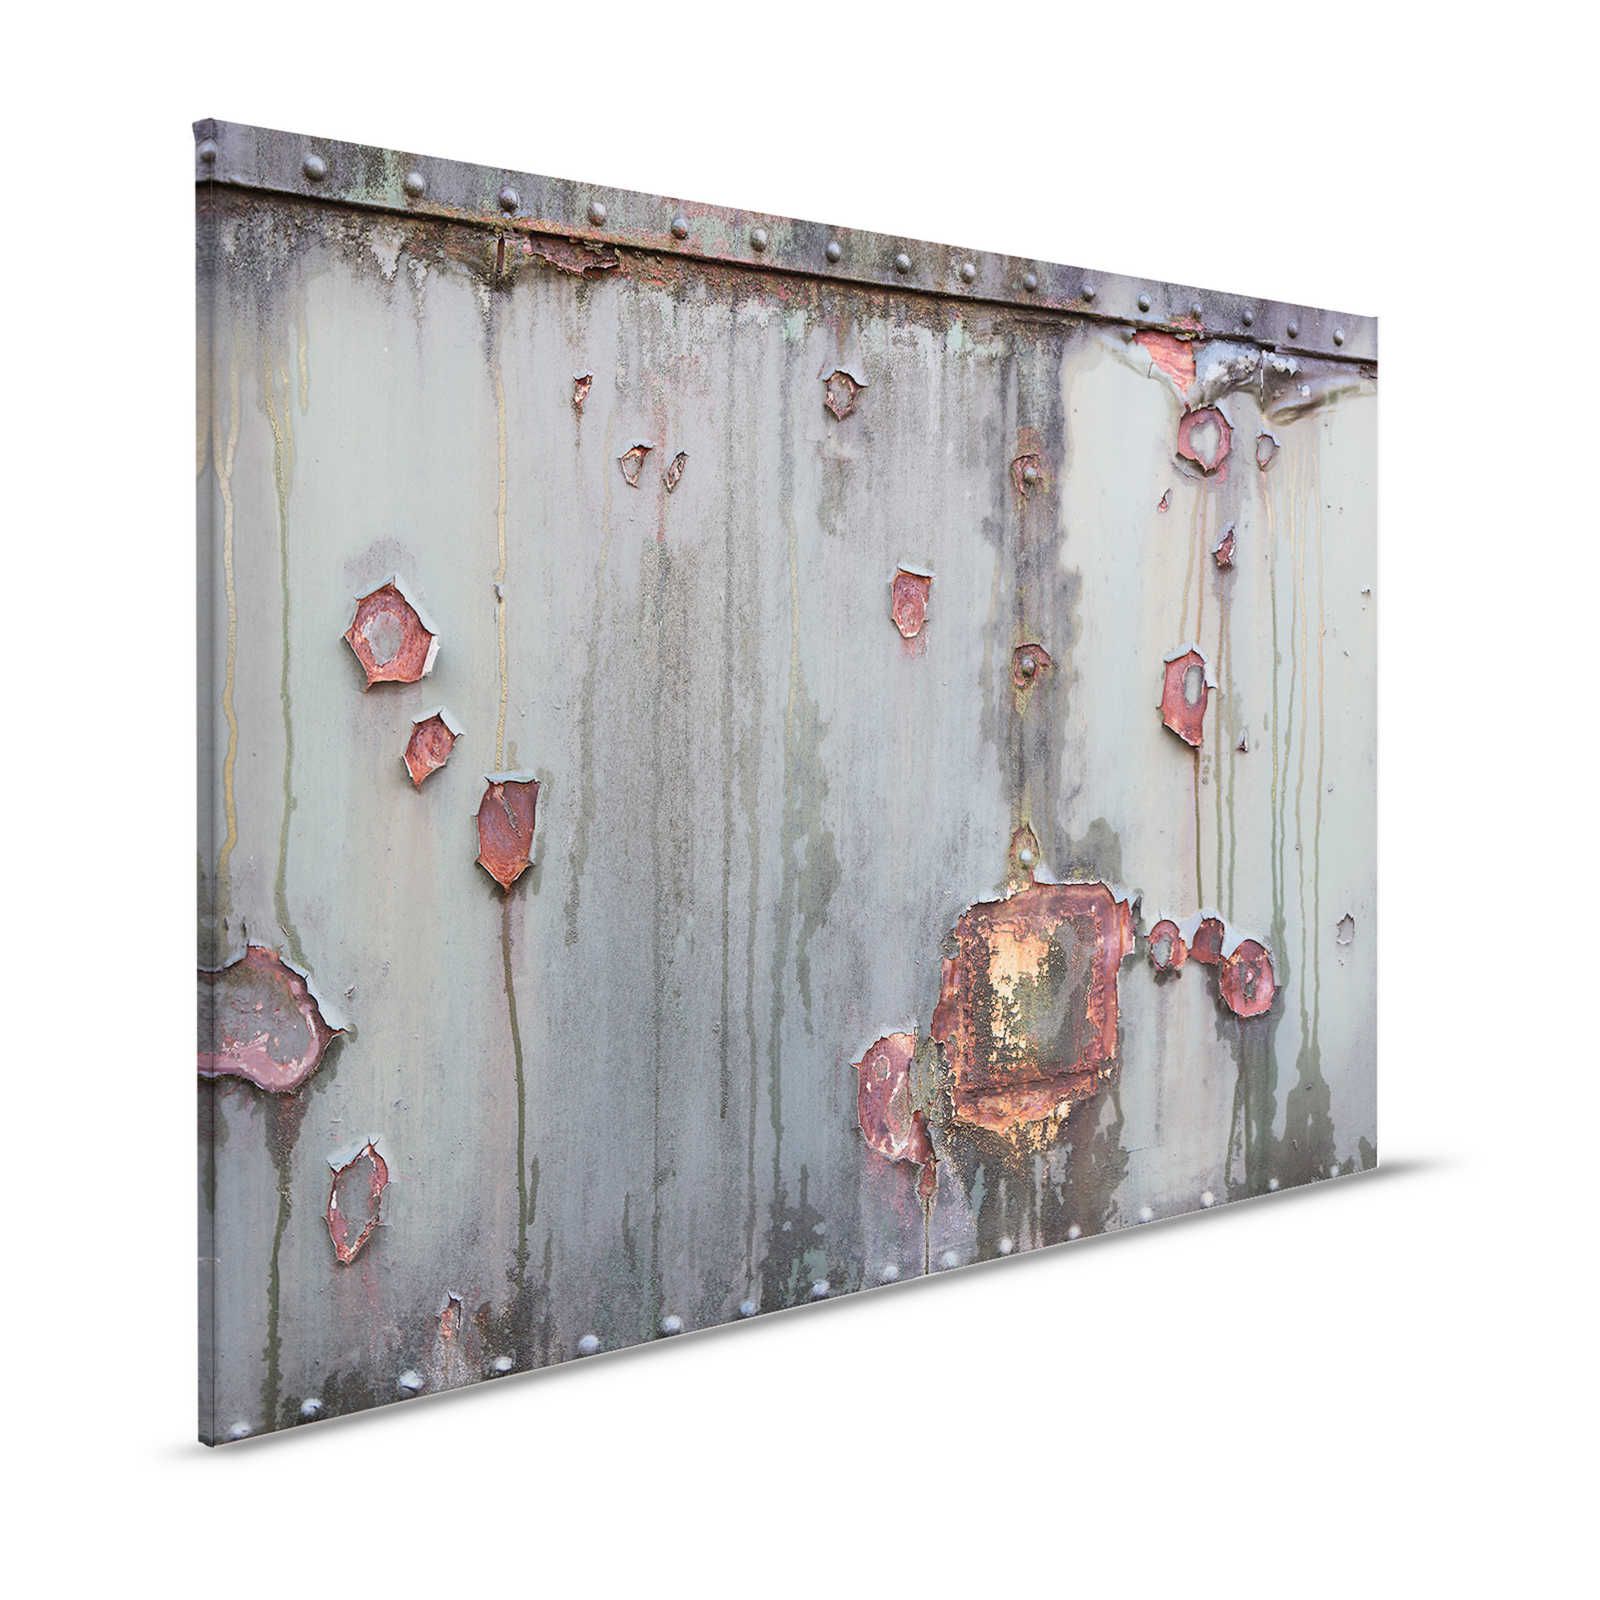 Metalen wand - Canvas schilderij Industrieel met roest & used look - 1.20 m x 0.80 m
